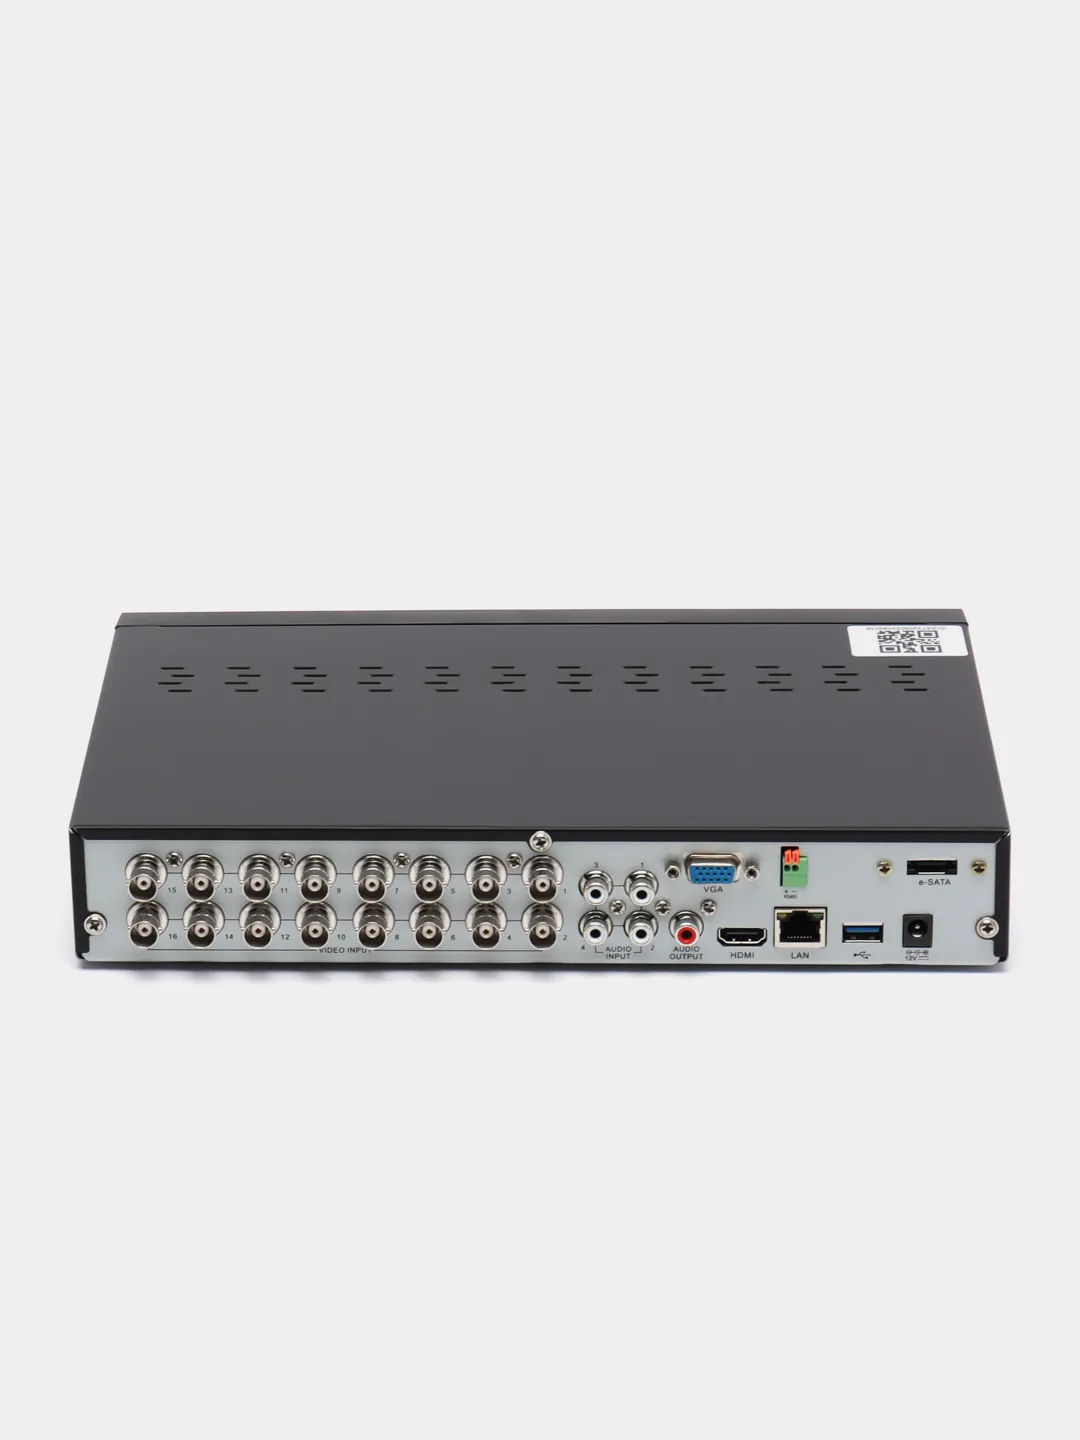 Hybrid регистратор. SVR-6110n v3.0 видеорегистратор гибридный. Подключение регистратора гибрид Эльбрус.